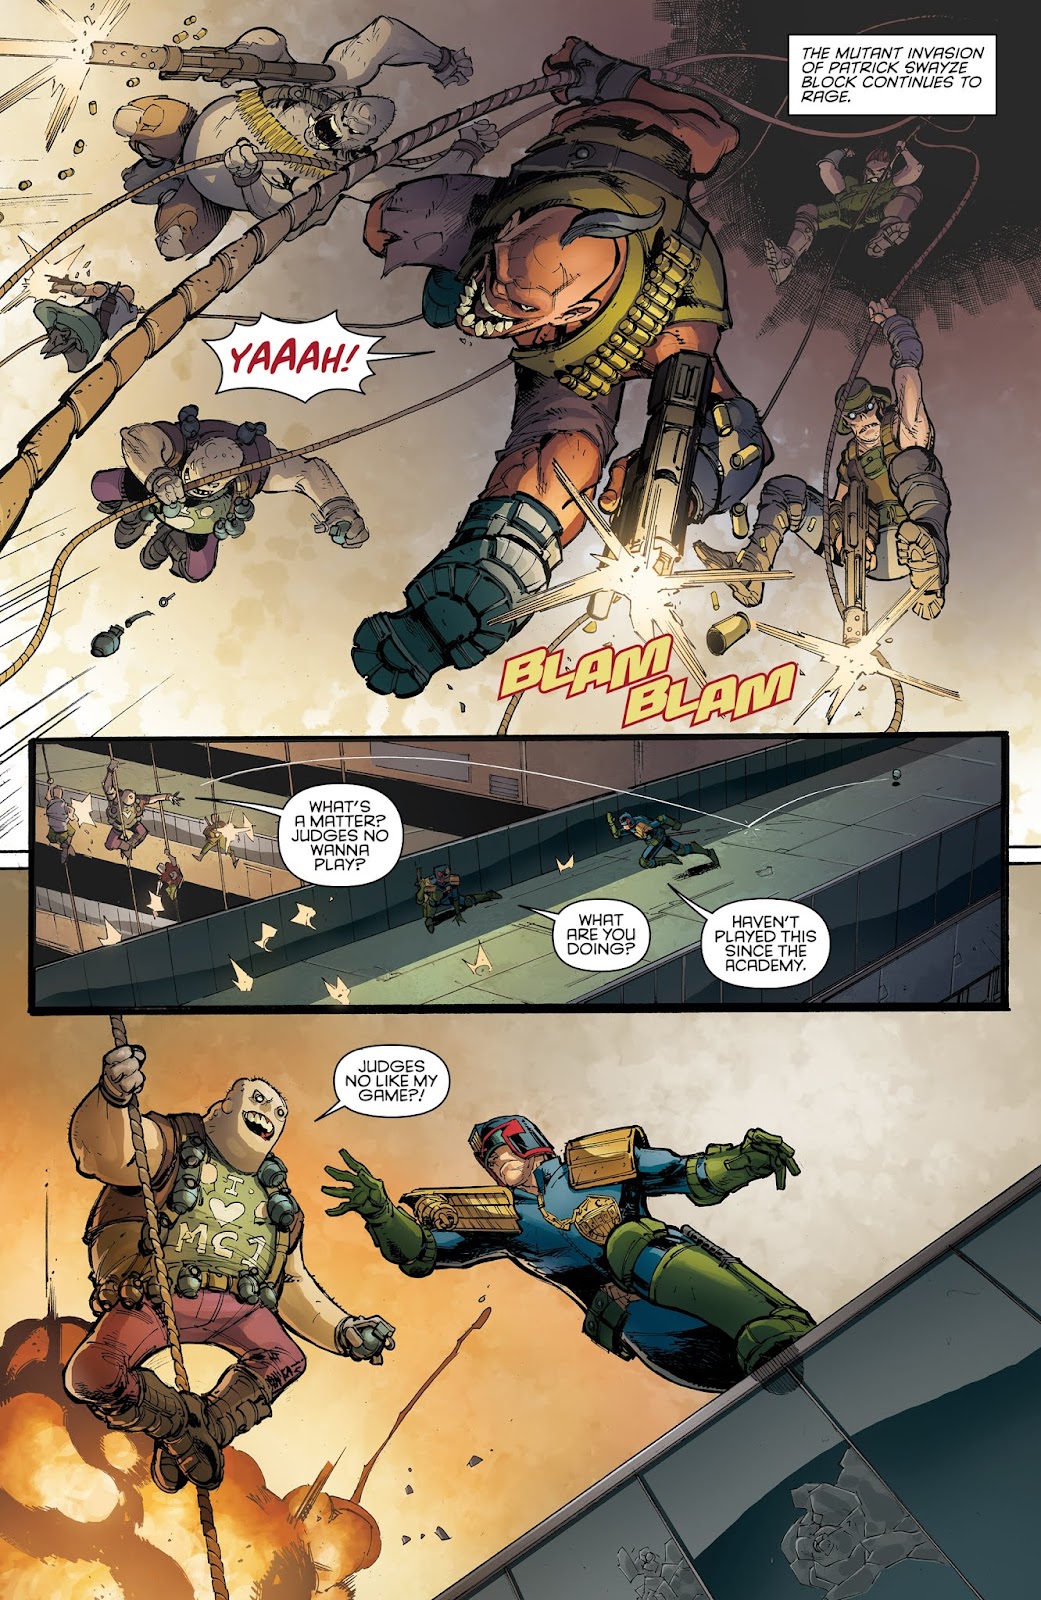 Judge Dredd: Under Siege issue 3 - Page 3